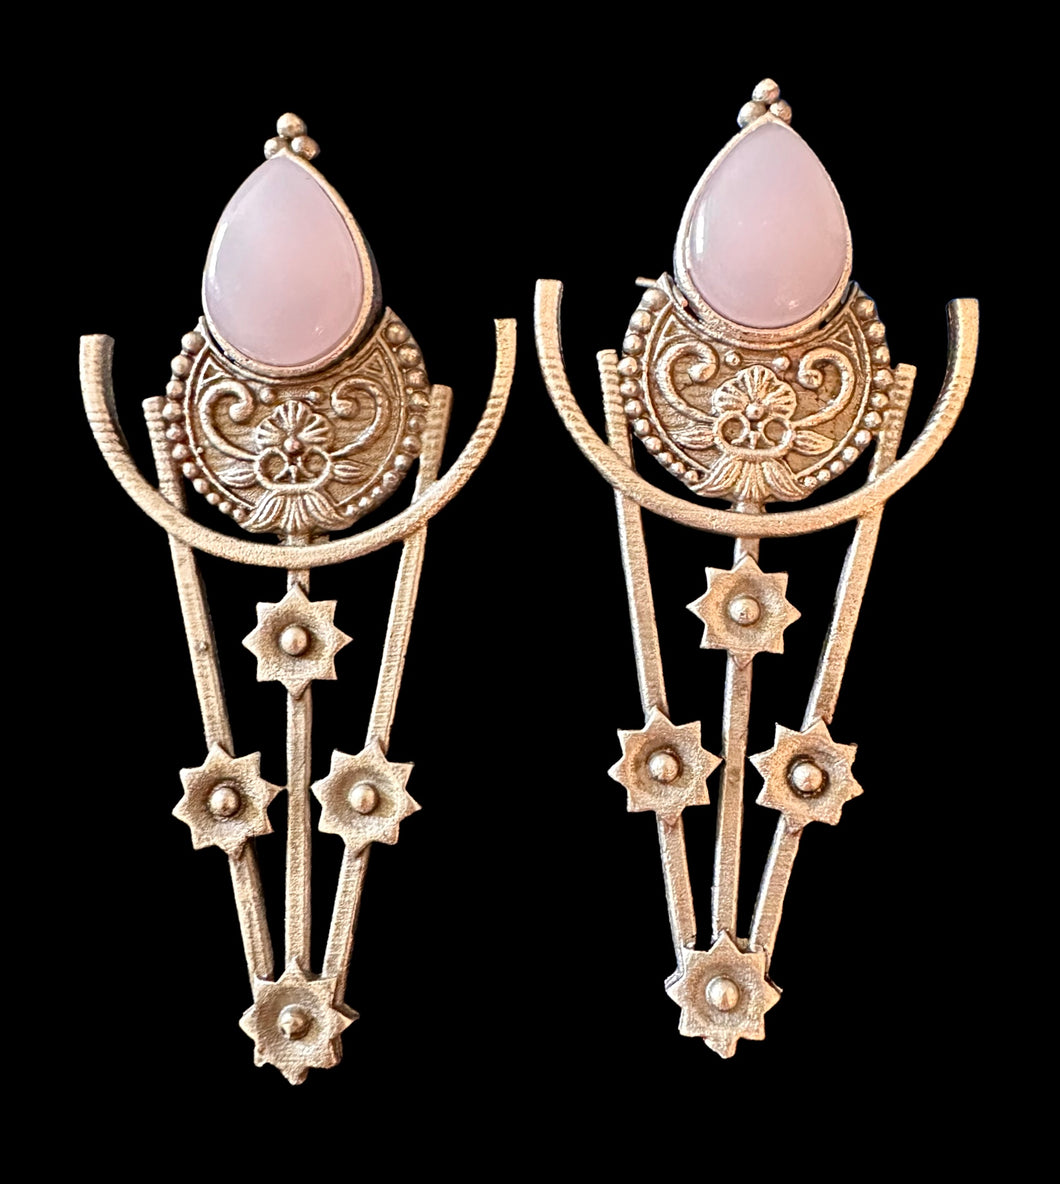 Pink German silver earrings